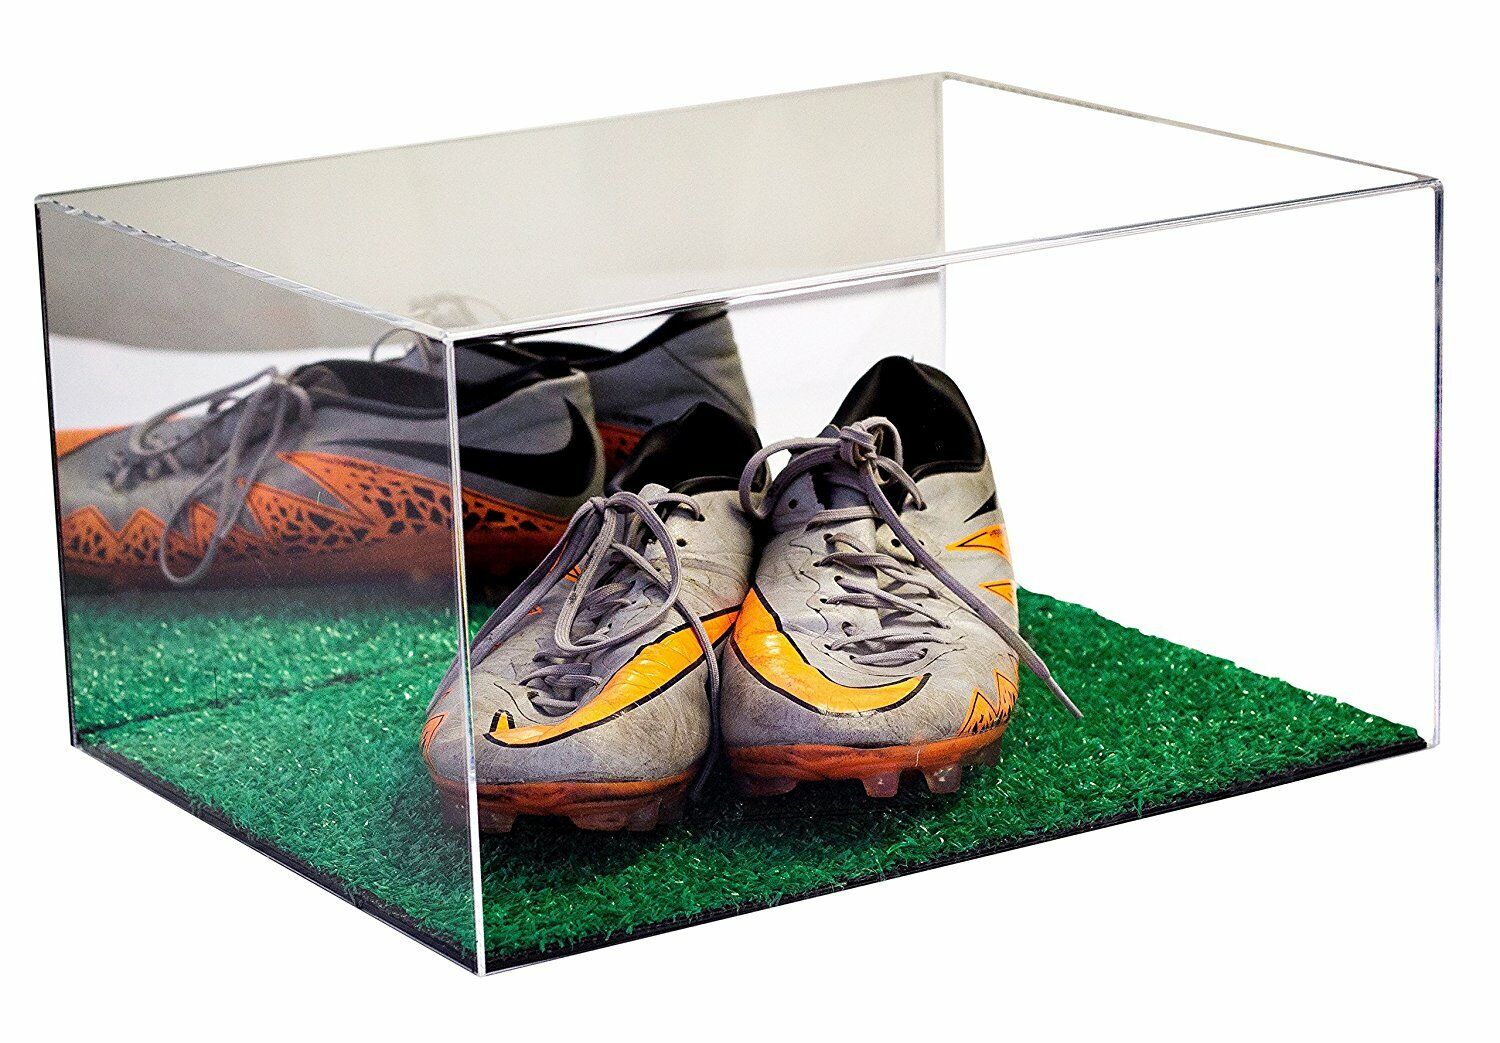 Soccer, Baseball, or Football Cleats Display Case-Turf Floor & Mirror (A026-MTB)